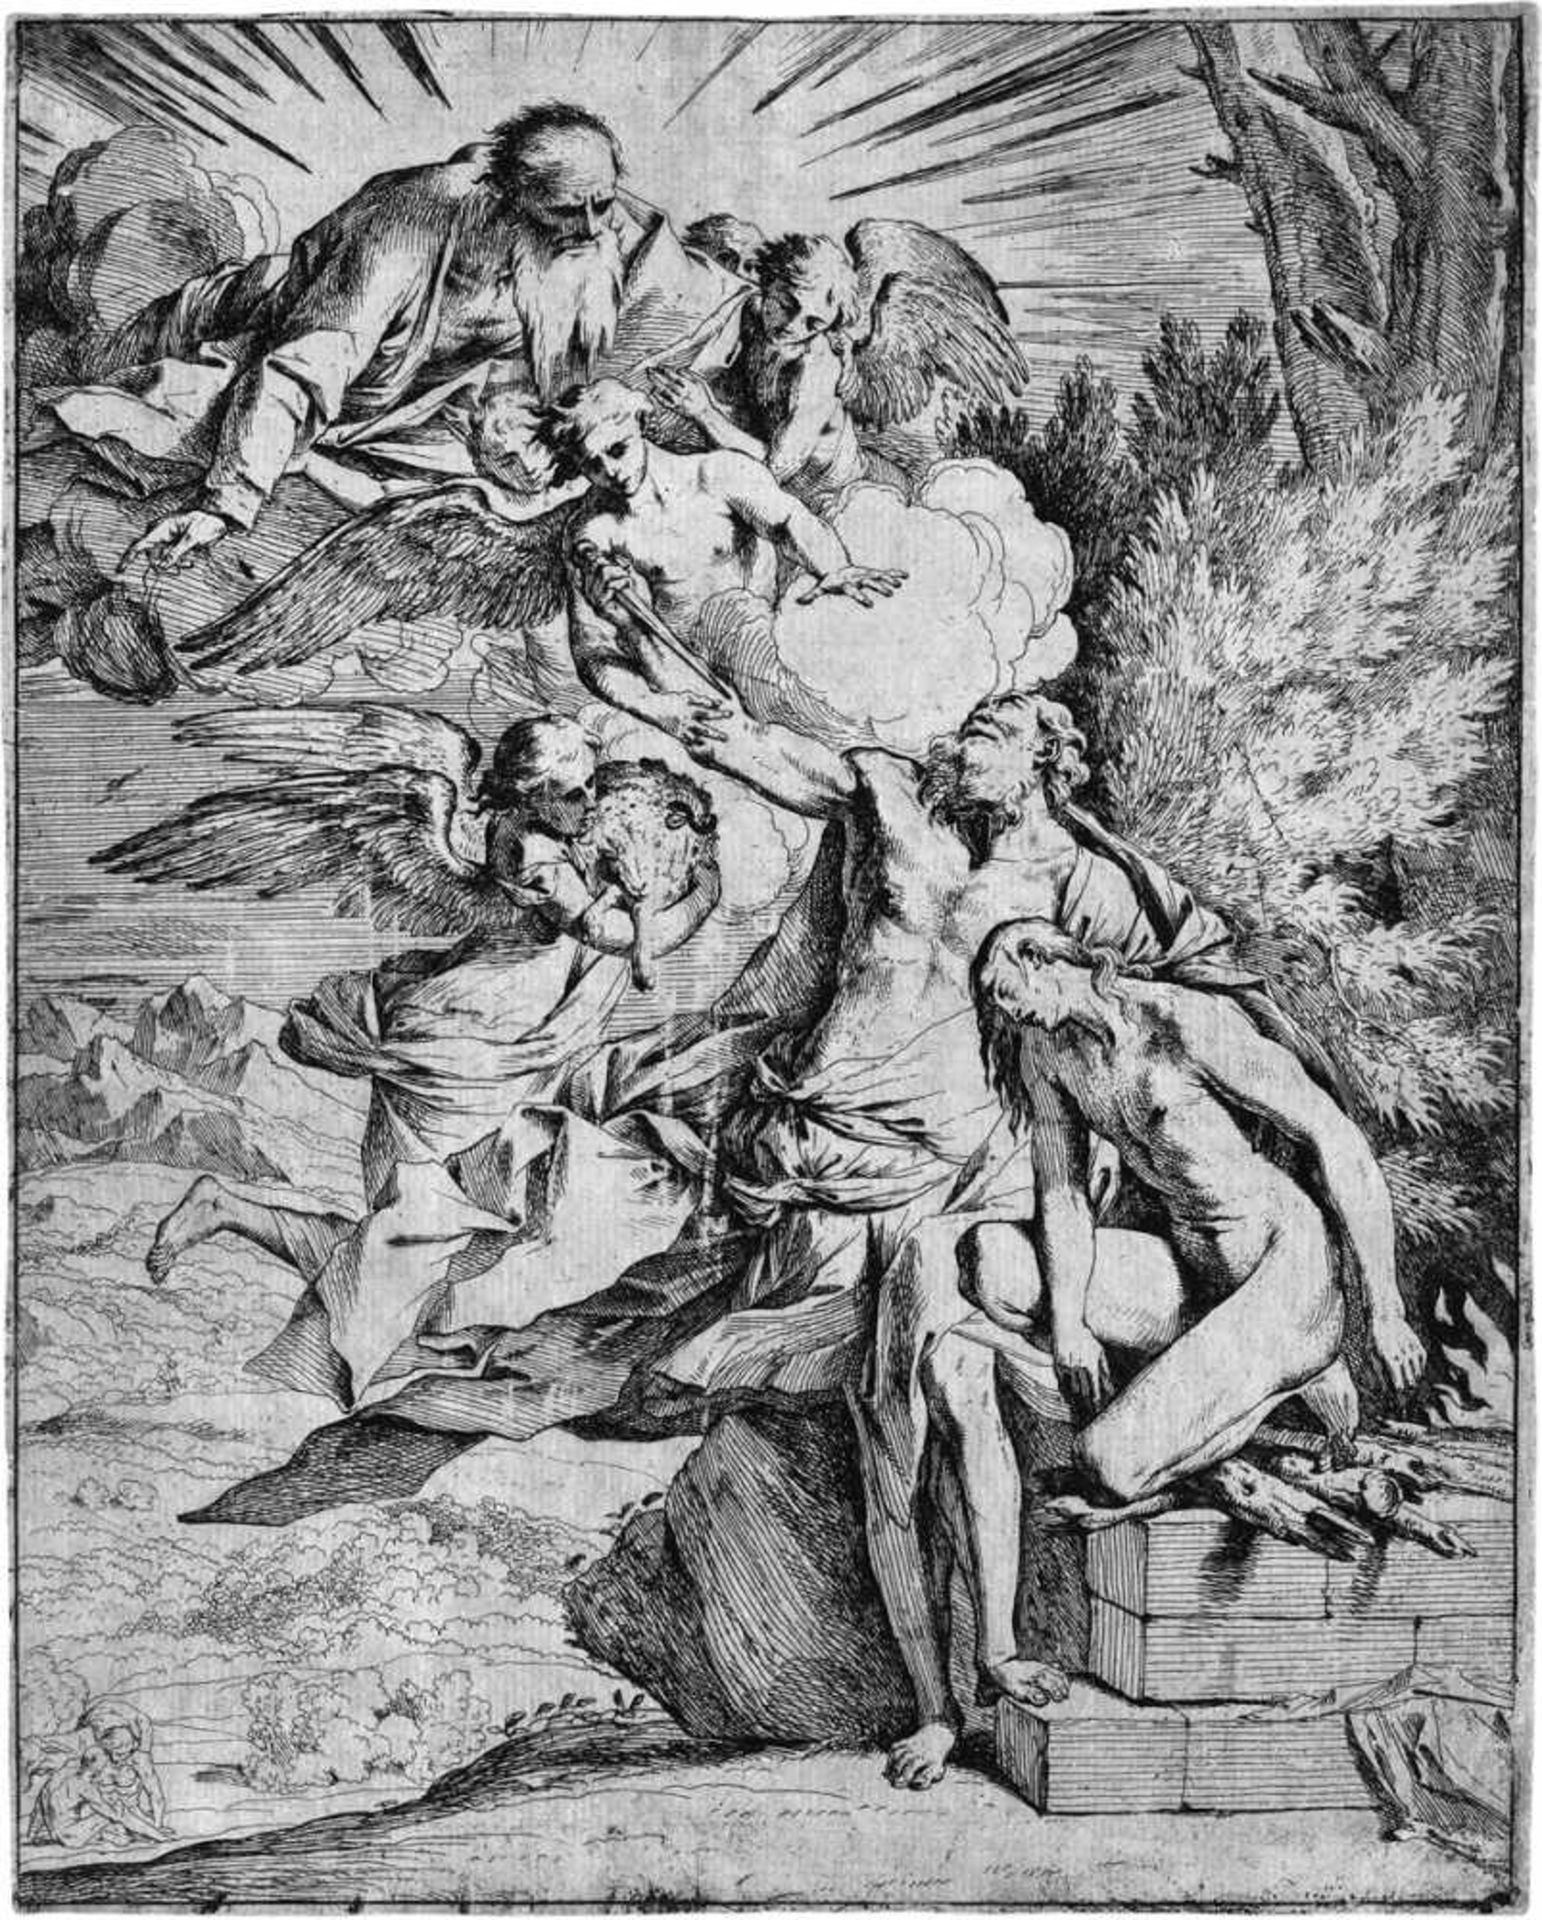 Testa, Pietro: Das Opfer AbrahamsDas Opfer Abrahams. Radierung. 29,5 x 24 cm. 1645-50. B. 2, Bellini